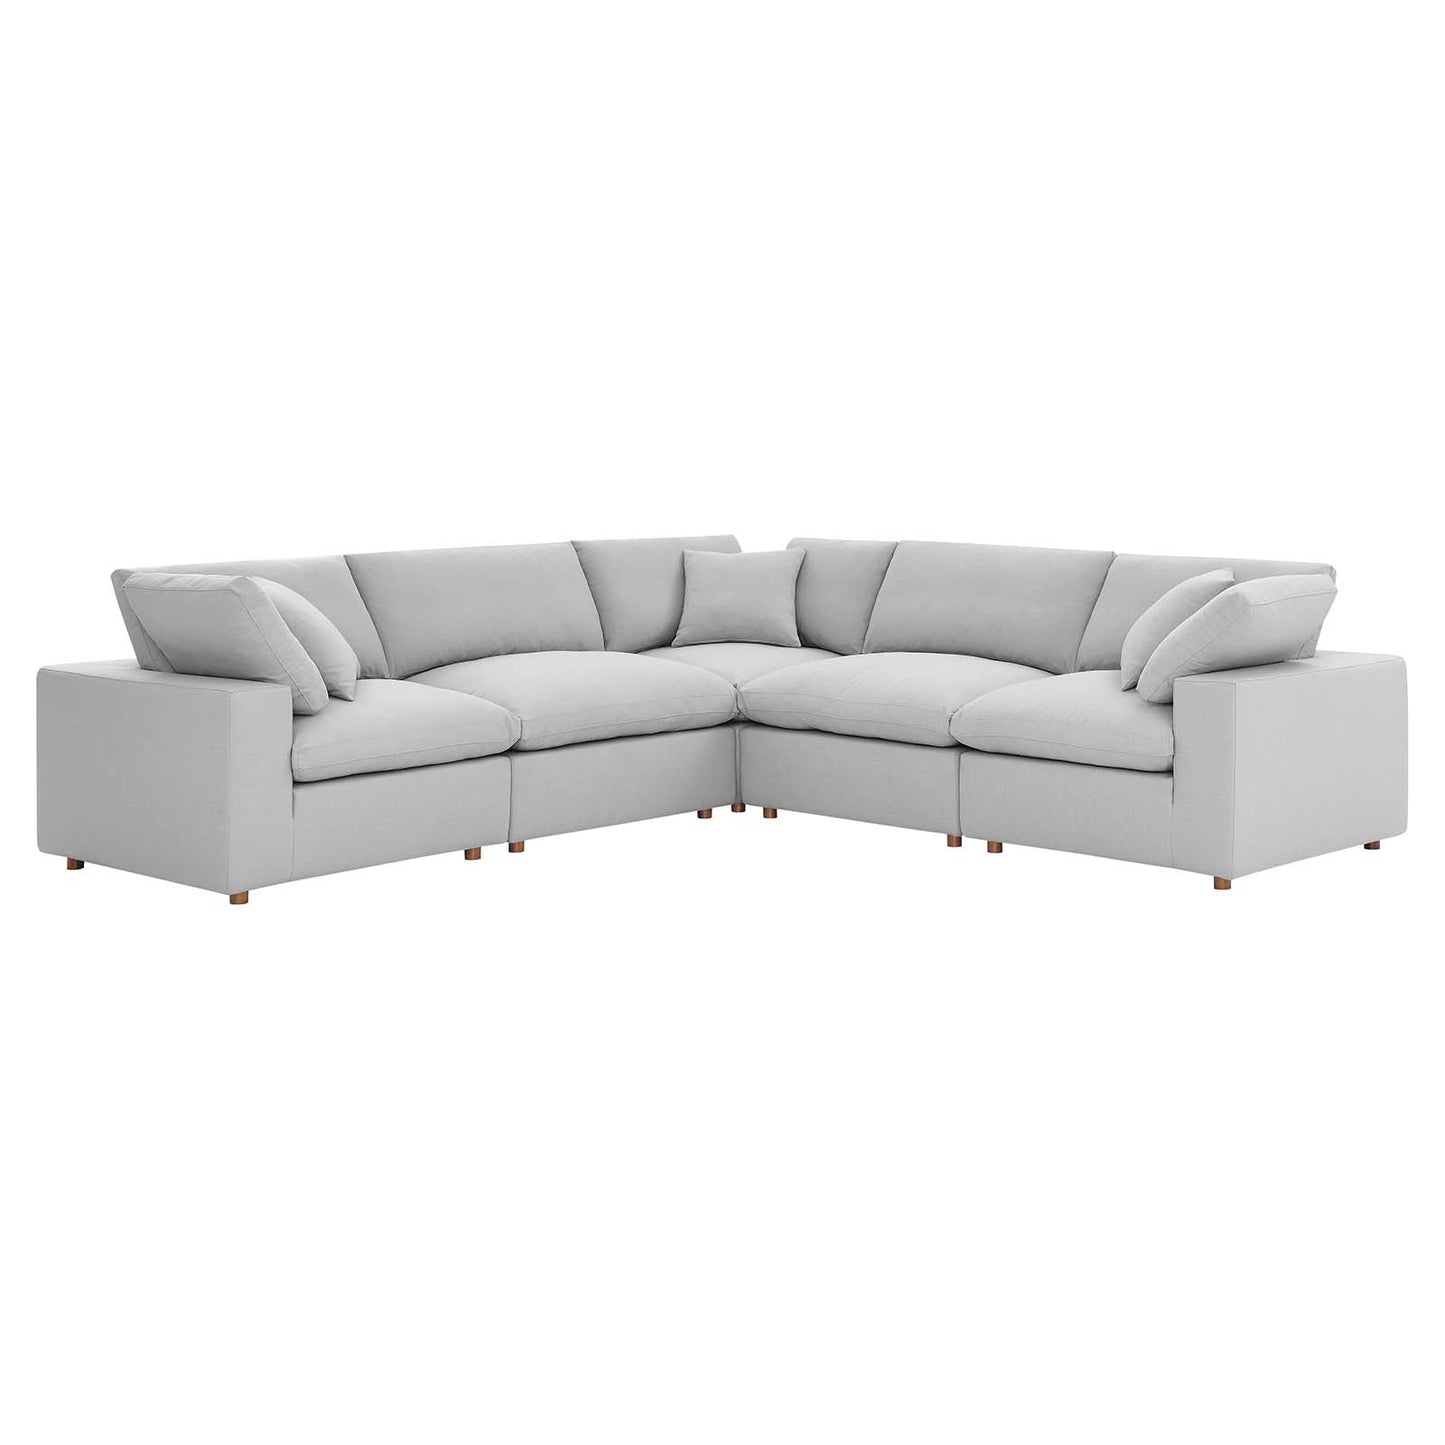 Commix Down Filled Overstuffed 5 Piece 5-Piece Sectional Sofa Light Gray EEI-3359-LGR